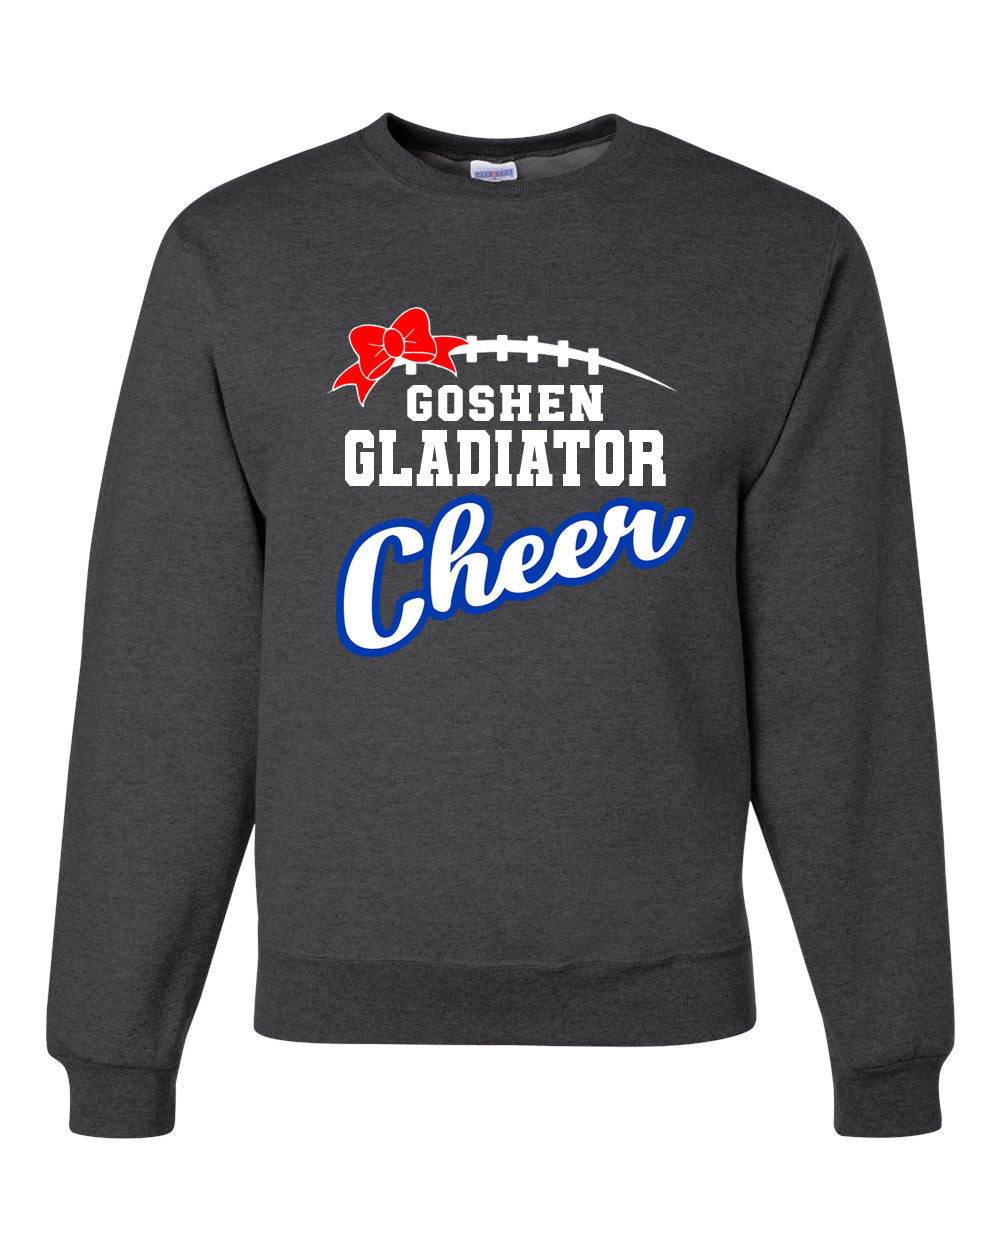 Goshen Cheer Design 13 non hooded sweatshirt